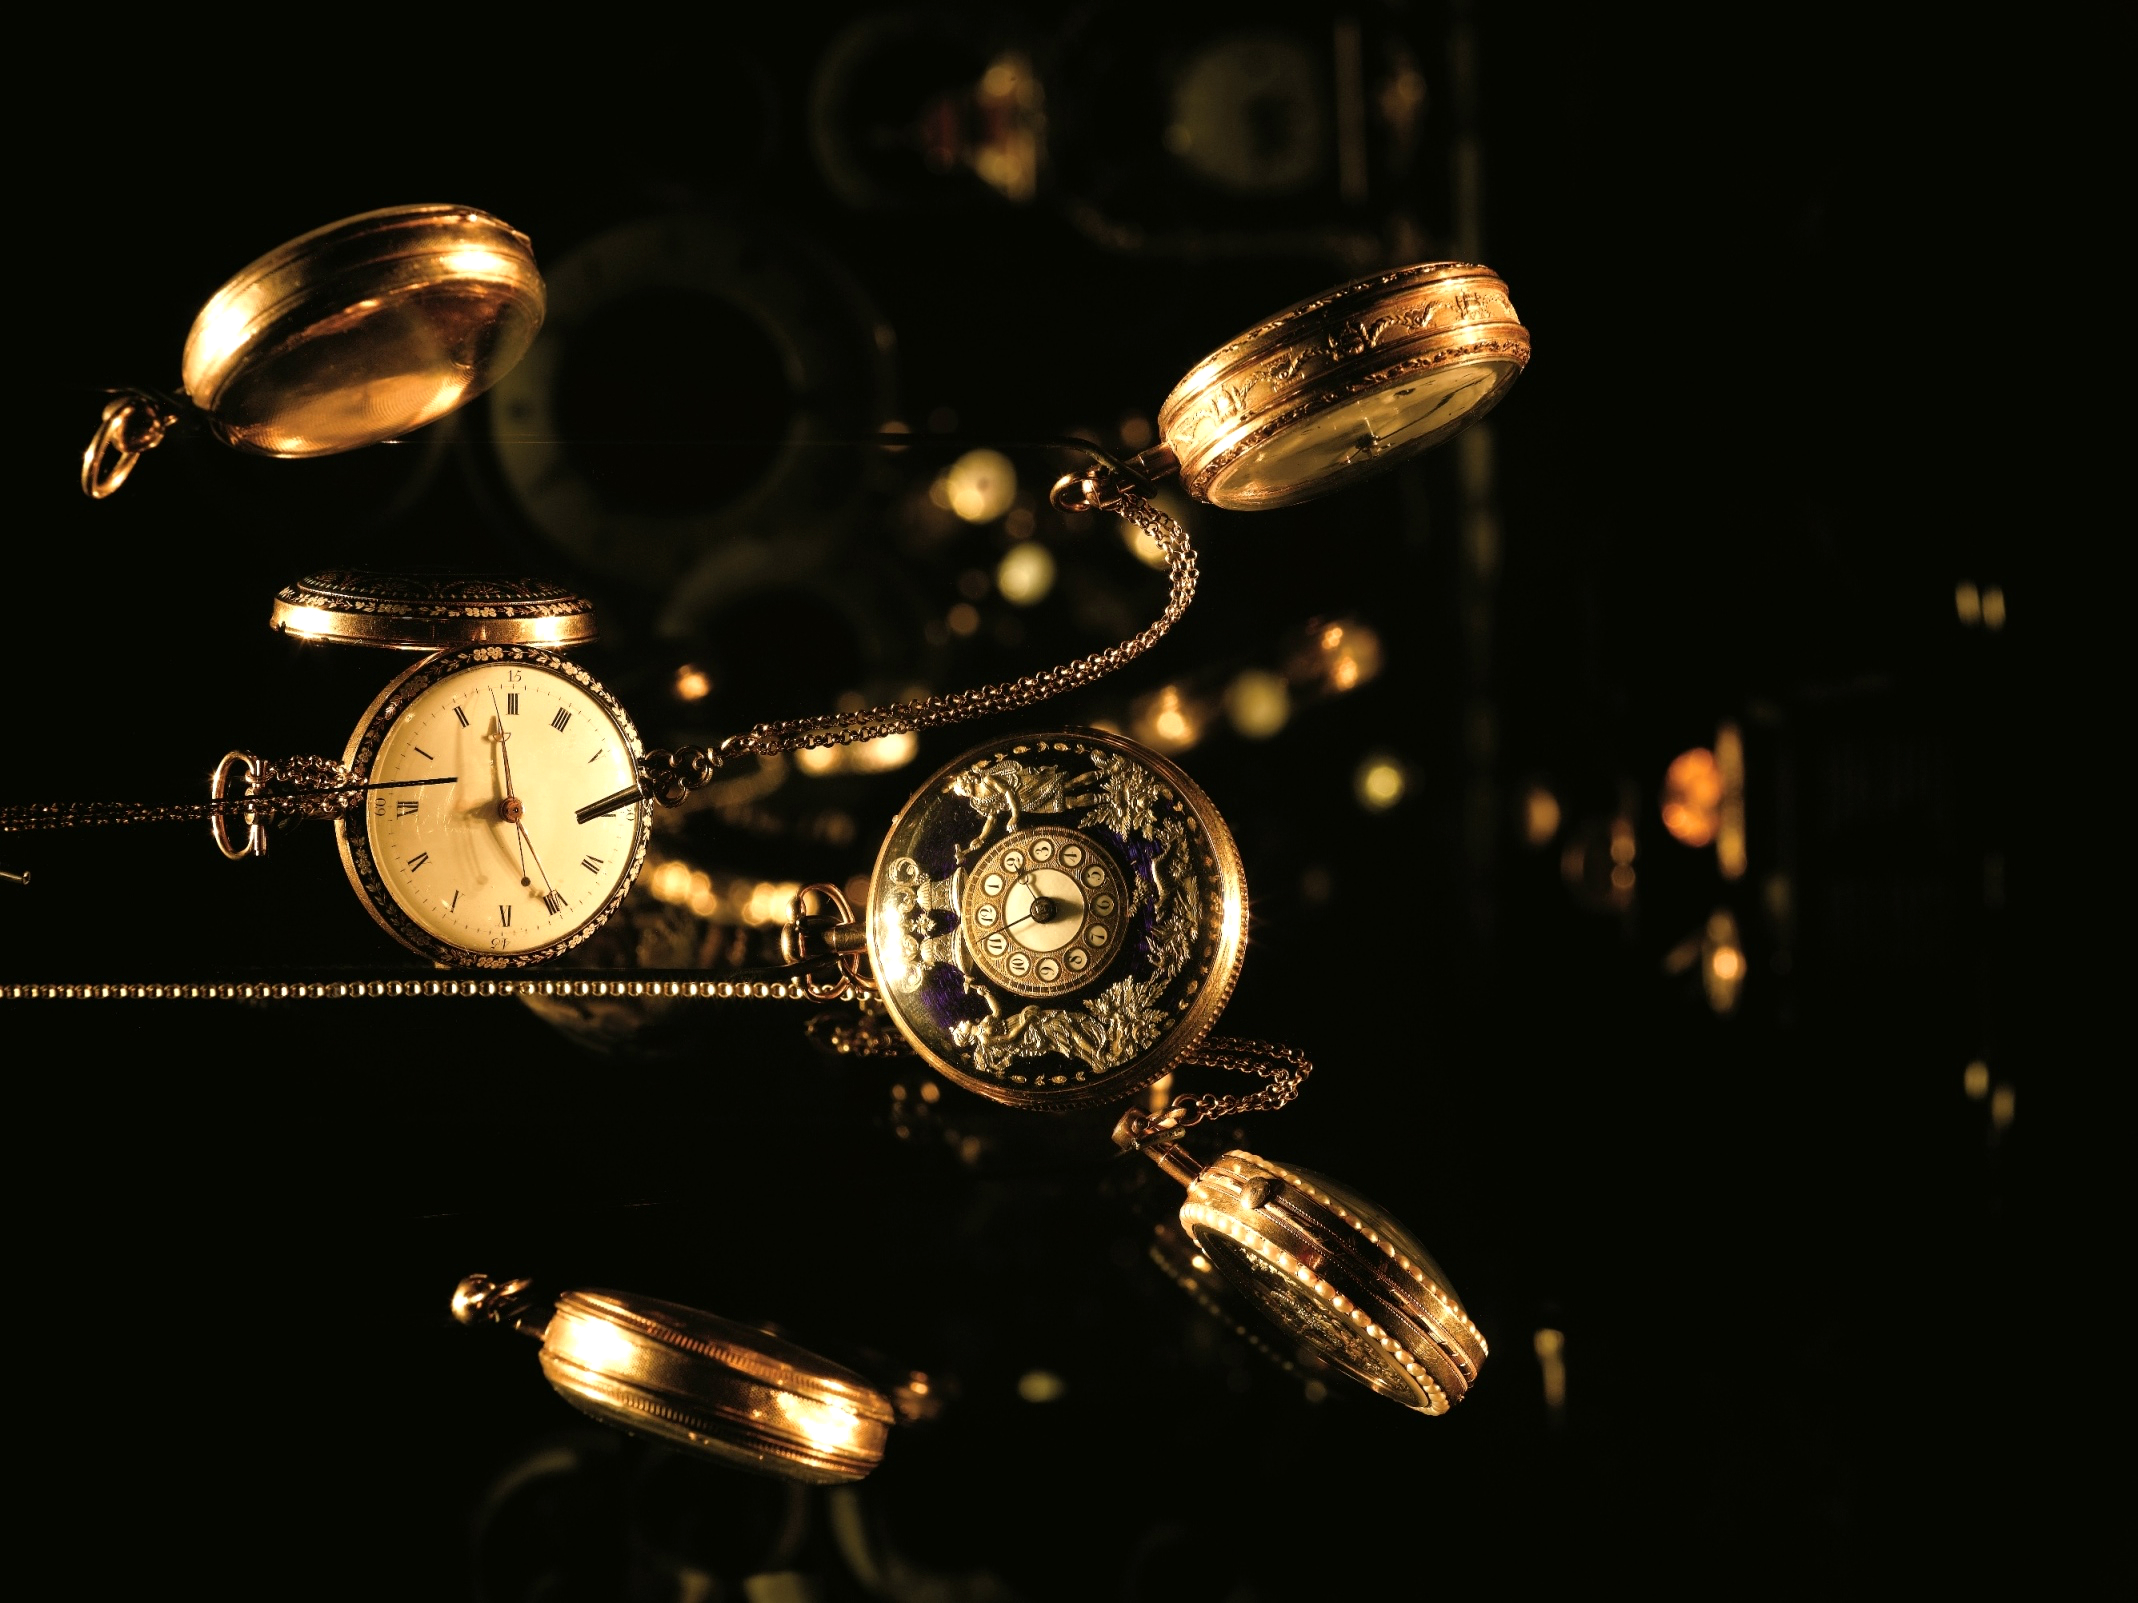 אוסף שעונים מוזאון האסלאם